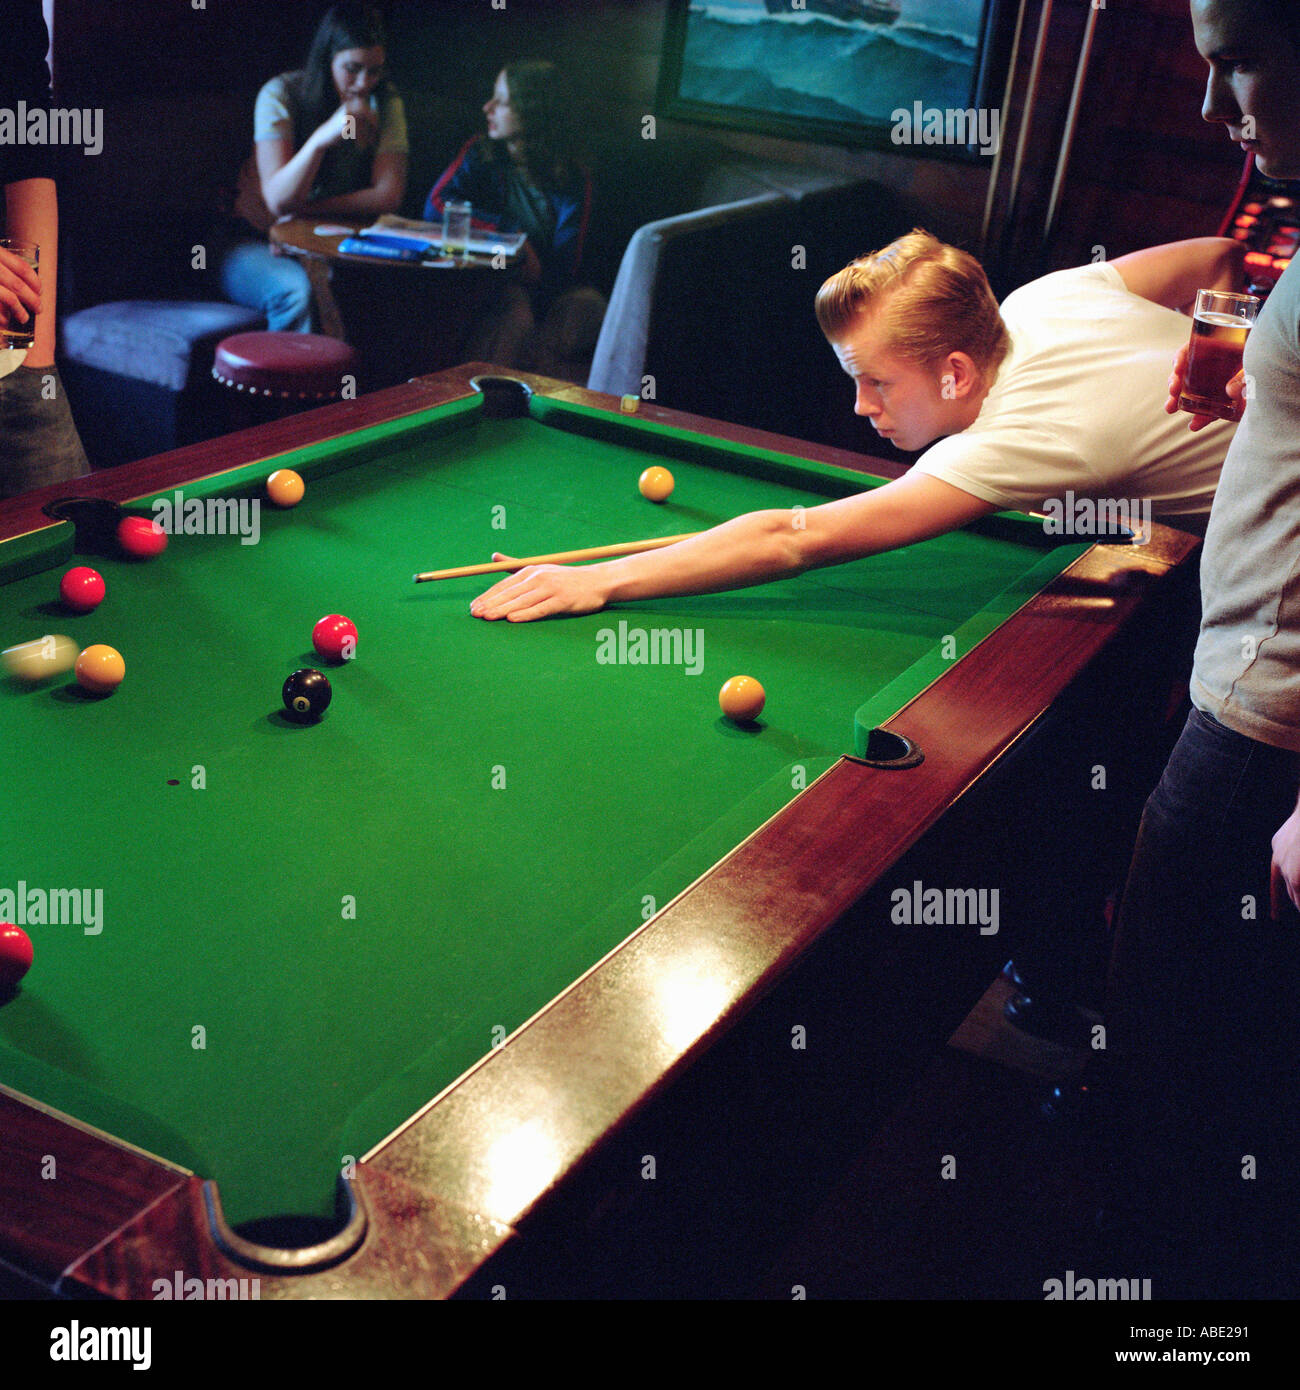 Men playing pool Stock Photo